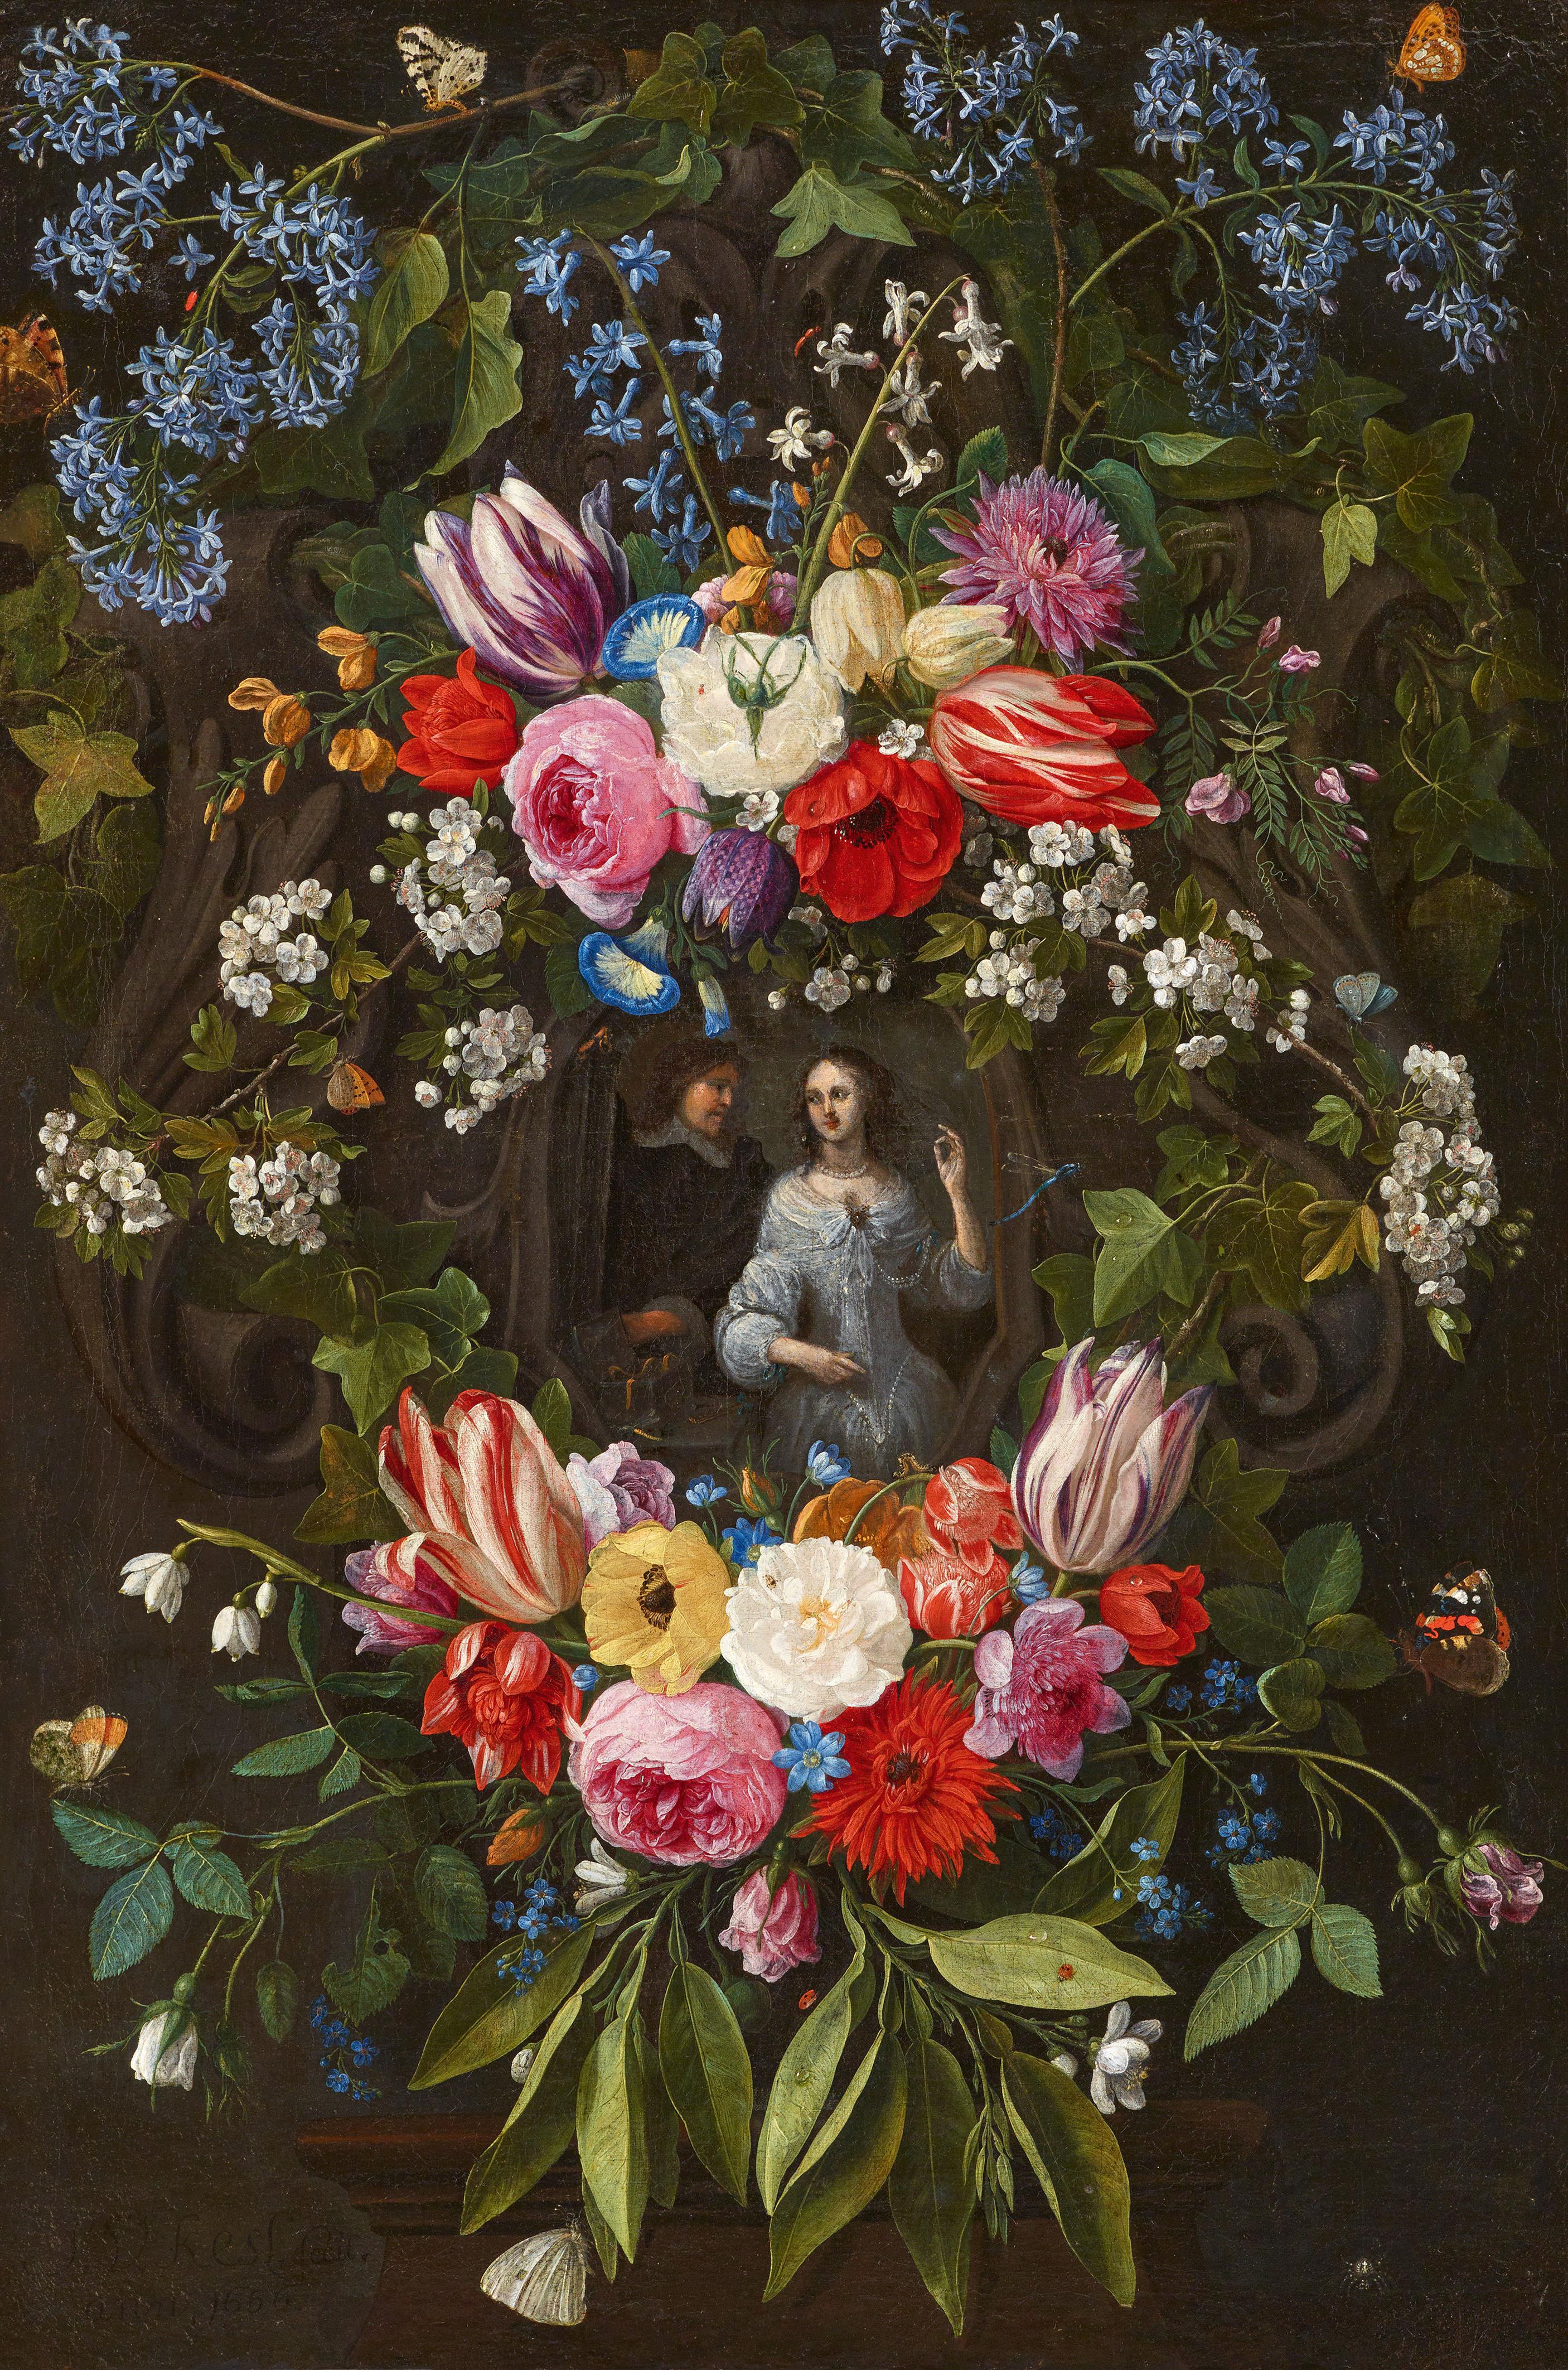 Jan van Kessel d. Ä.
Hieronymus Janssens - Blumengirlande mit einem eleganten Paar in der Mitte - image-1